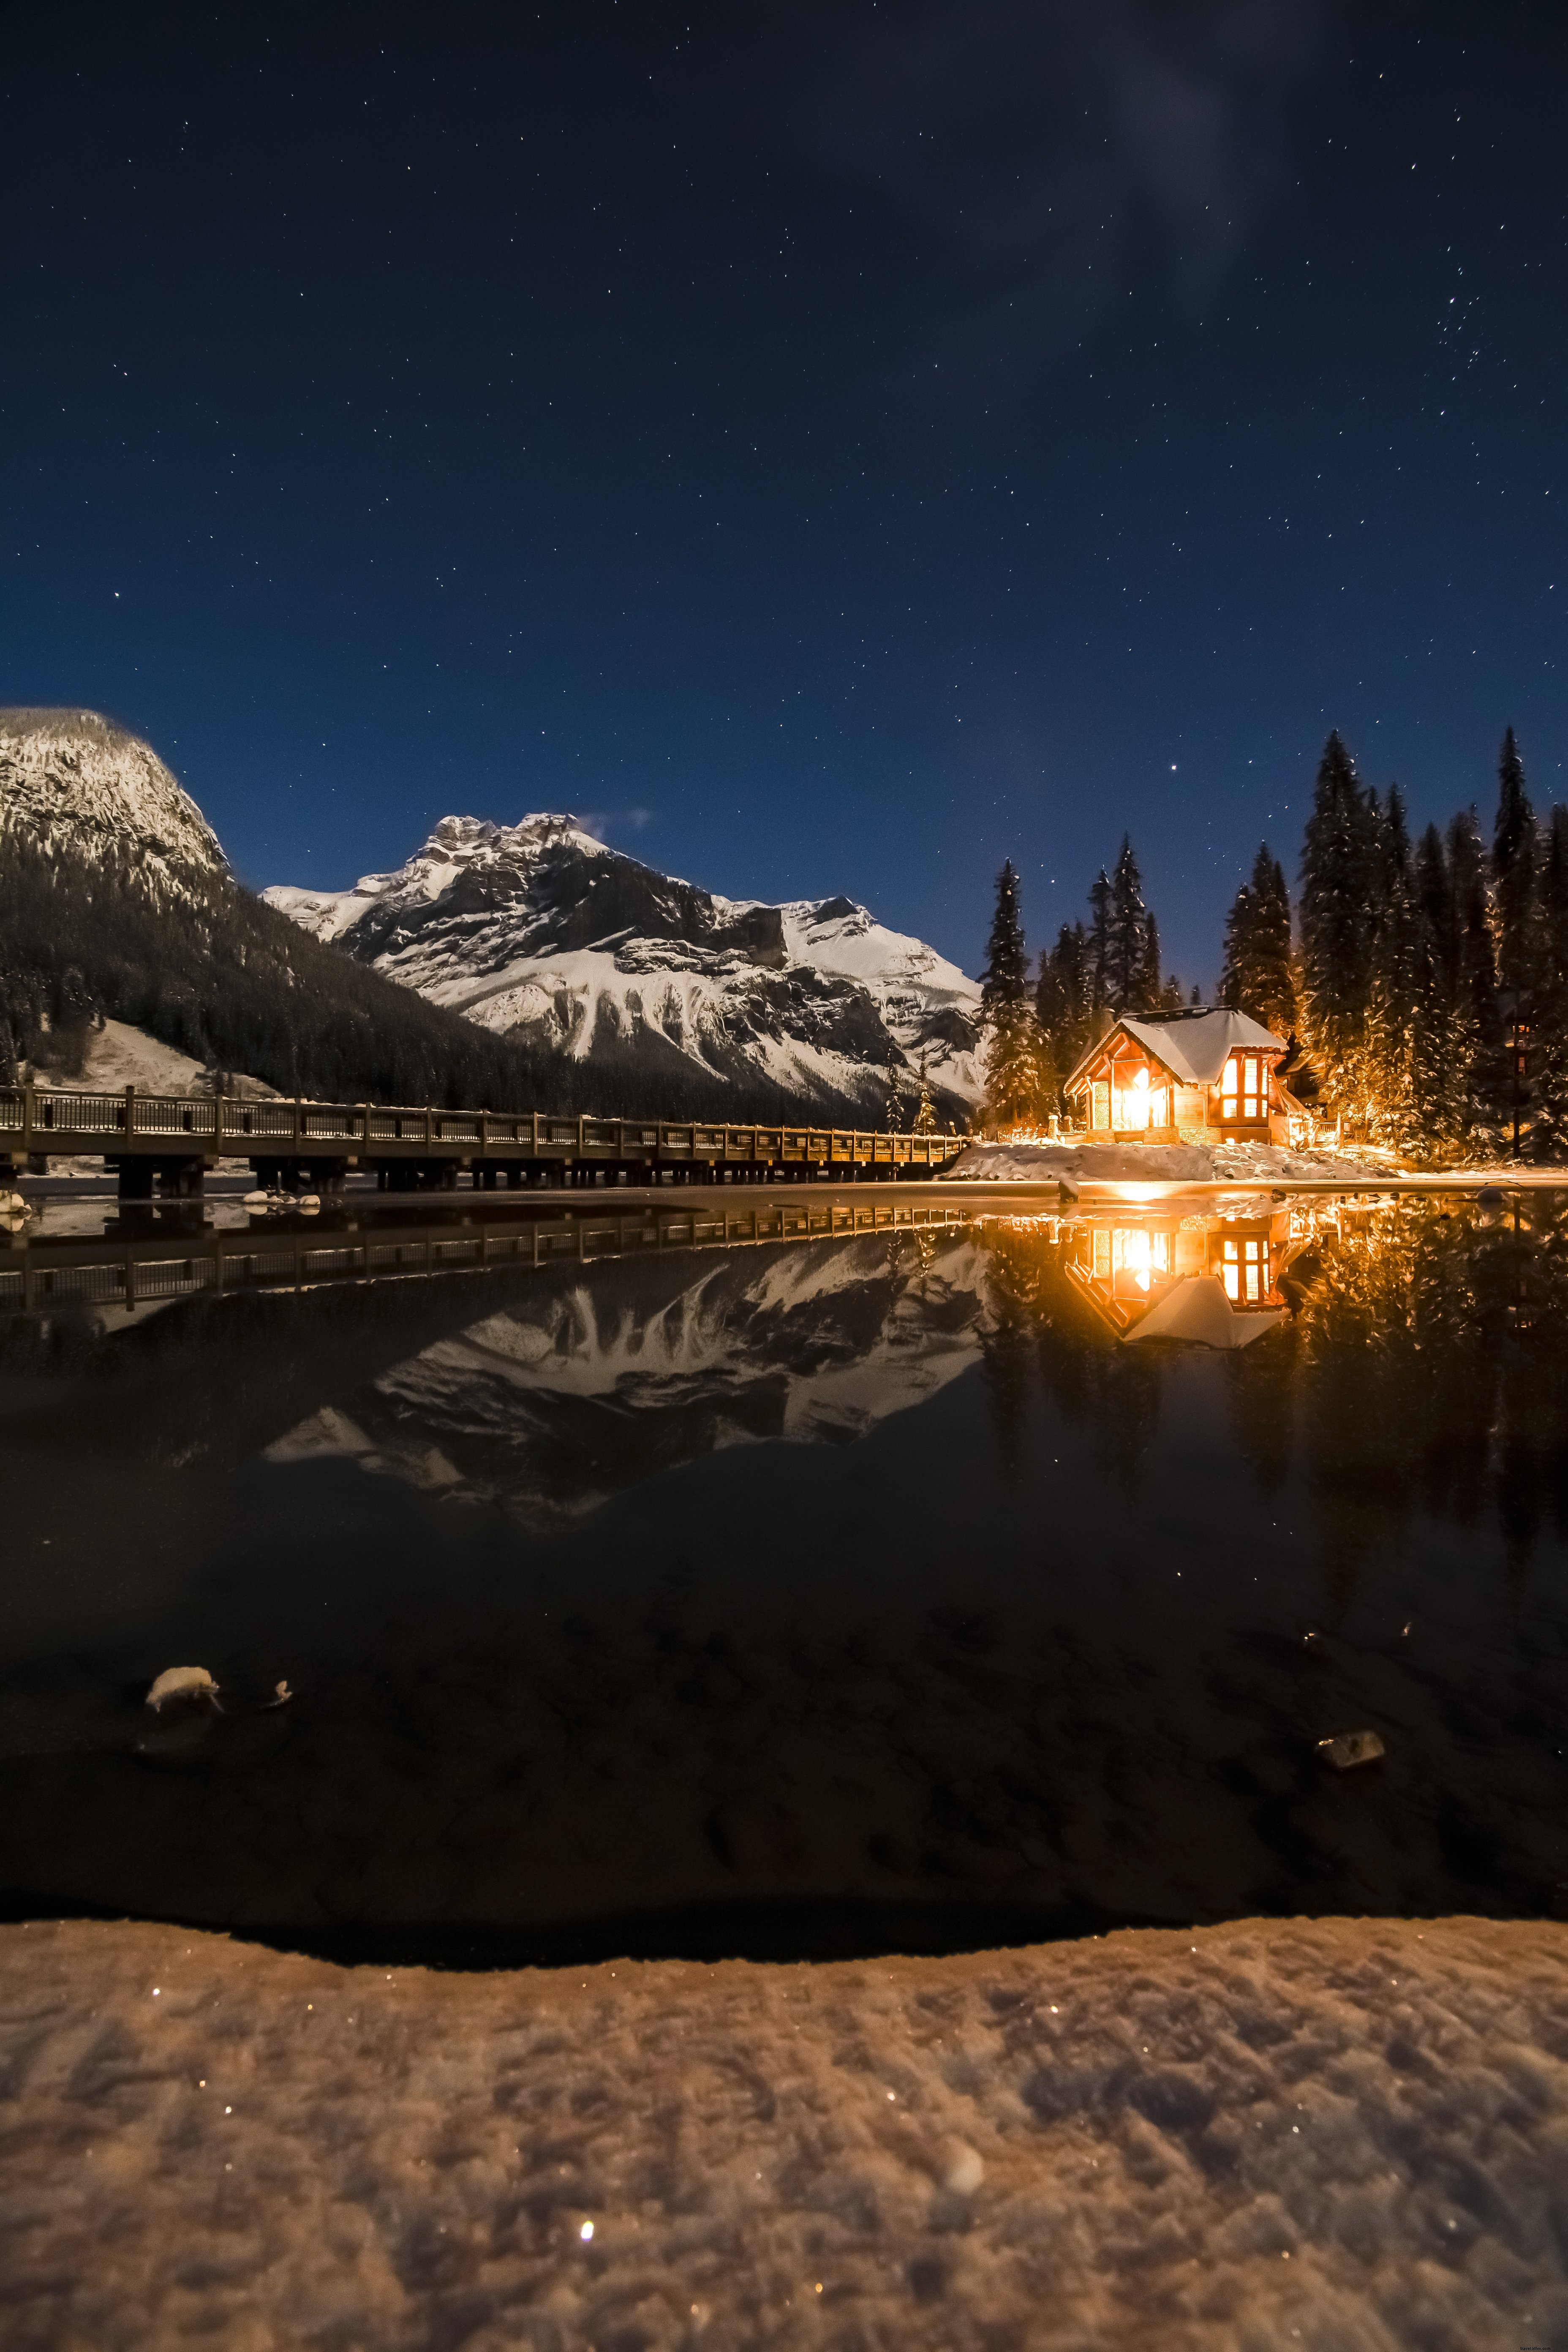 Casa iluminada por el fuego brilla junto a un lago helado contra un cielo estrellado Foto